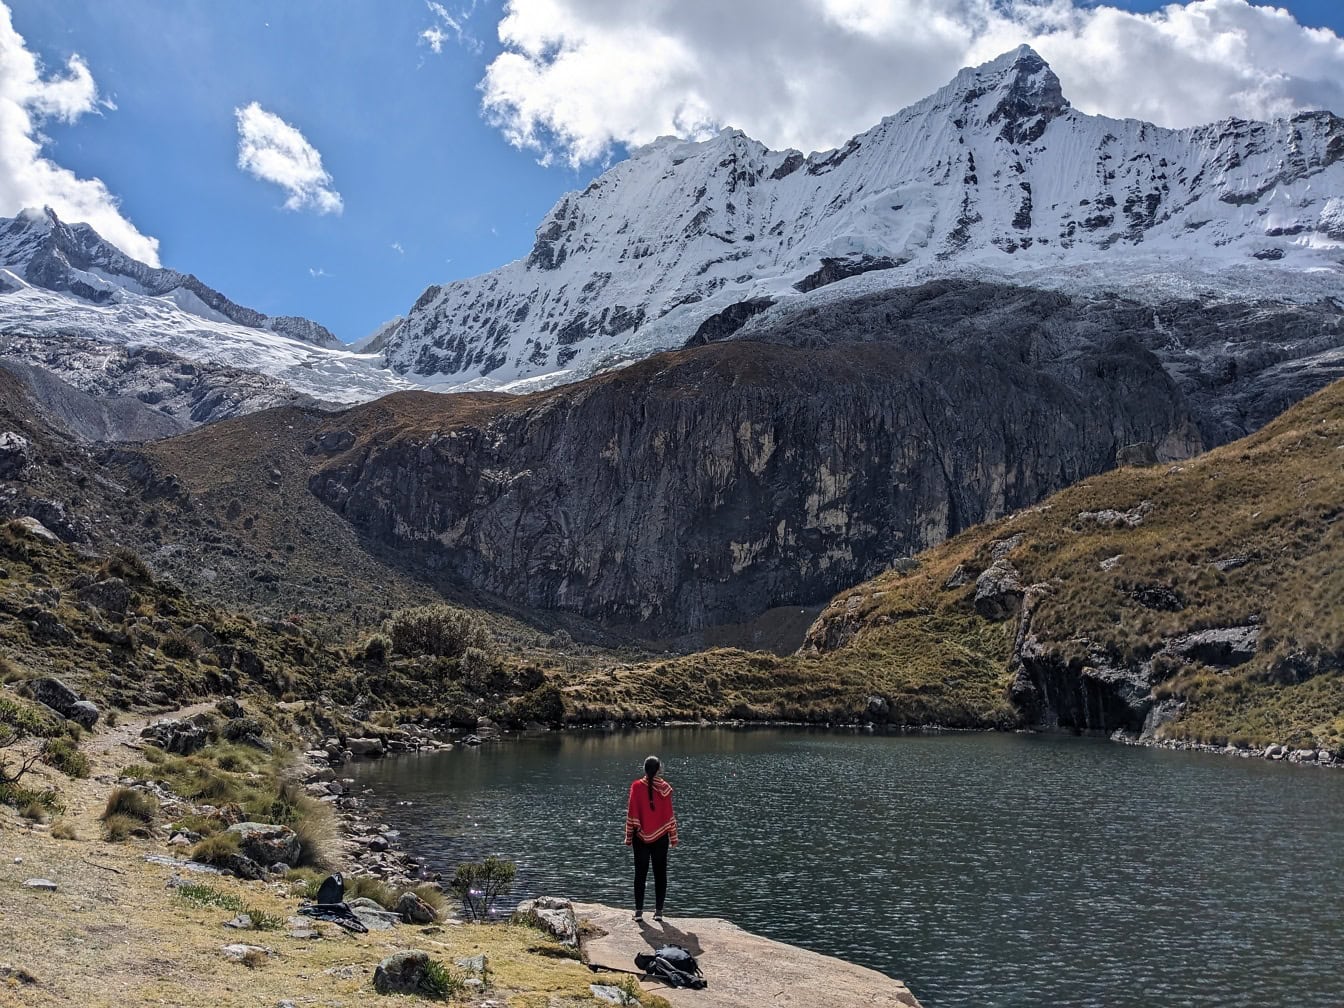 A hagyományos perui poncsóban szereplő személy egy tóparton áll a Cordillera Blanca hegységben, Peru Andokban, Latin-Amerikában